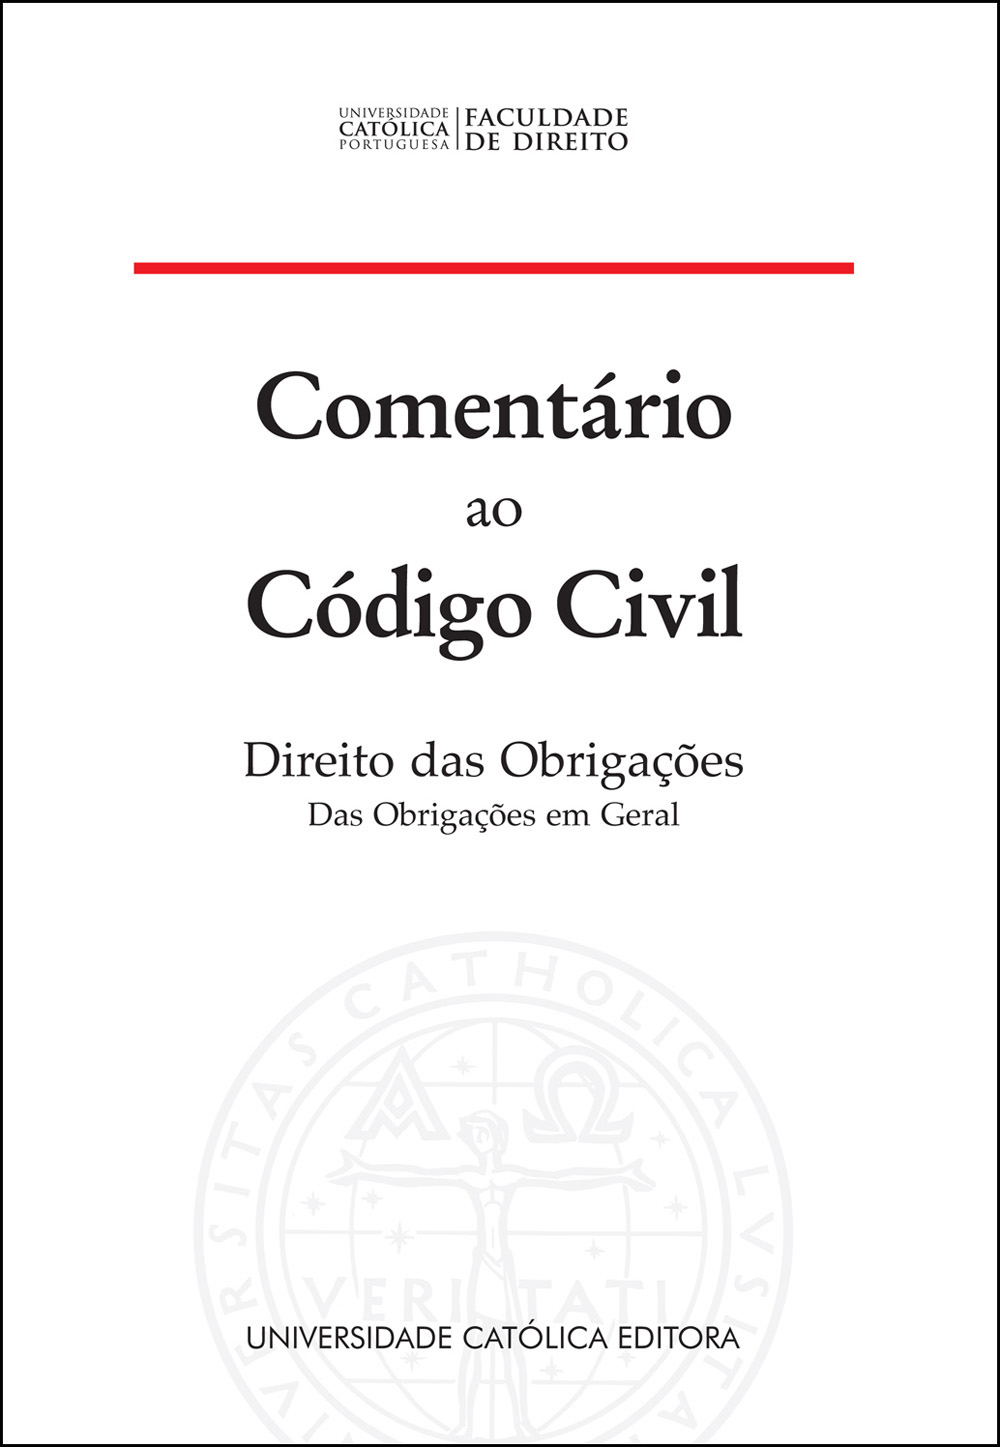 COMENTÁRIO AO CÓDIGO CIVIL - Direito das Obrigações. Das Obrigações em Geral